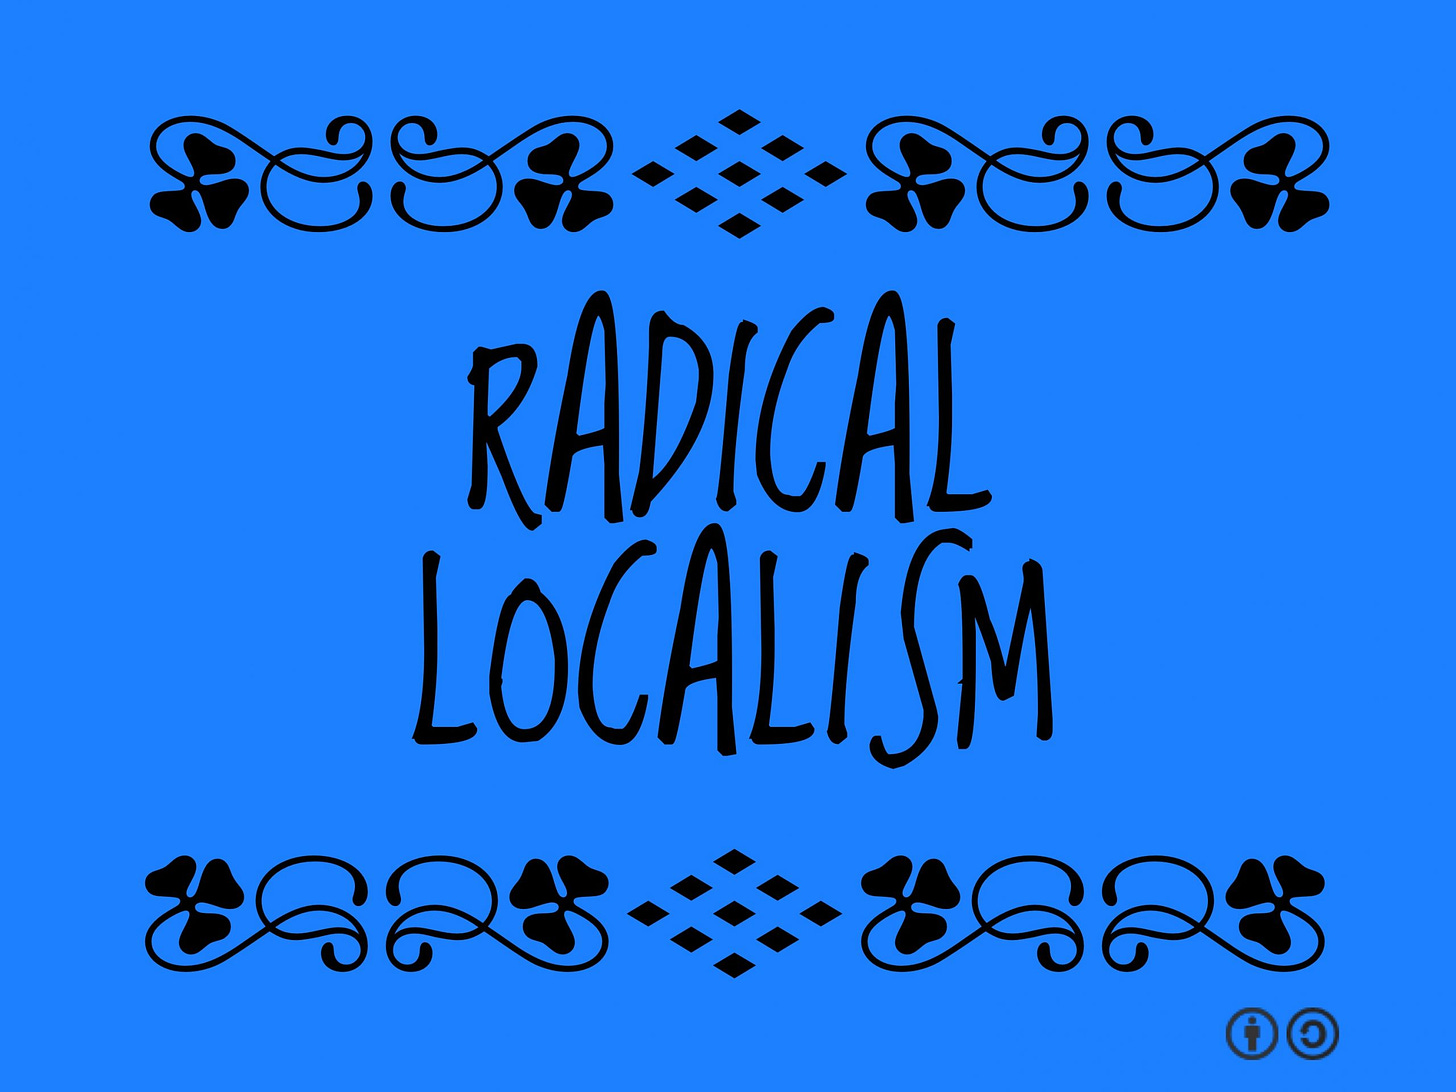 Radical Localism - Planeta.com